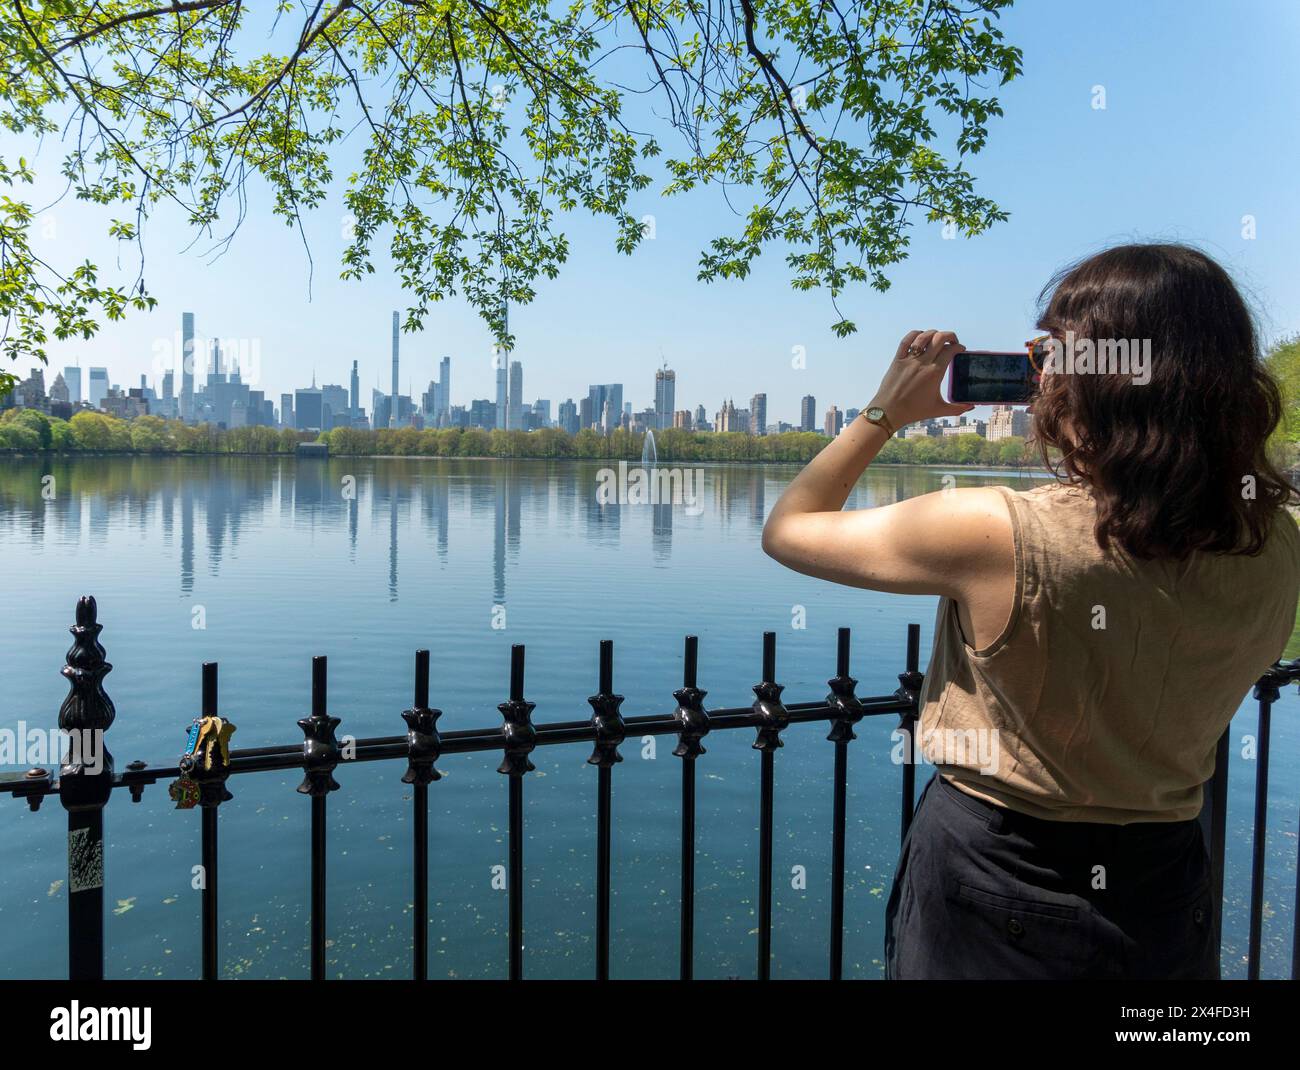 Frau fotografiert den Central Park Reservoir, New York City, USA Stockfoto